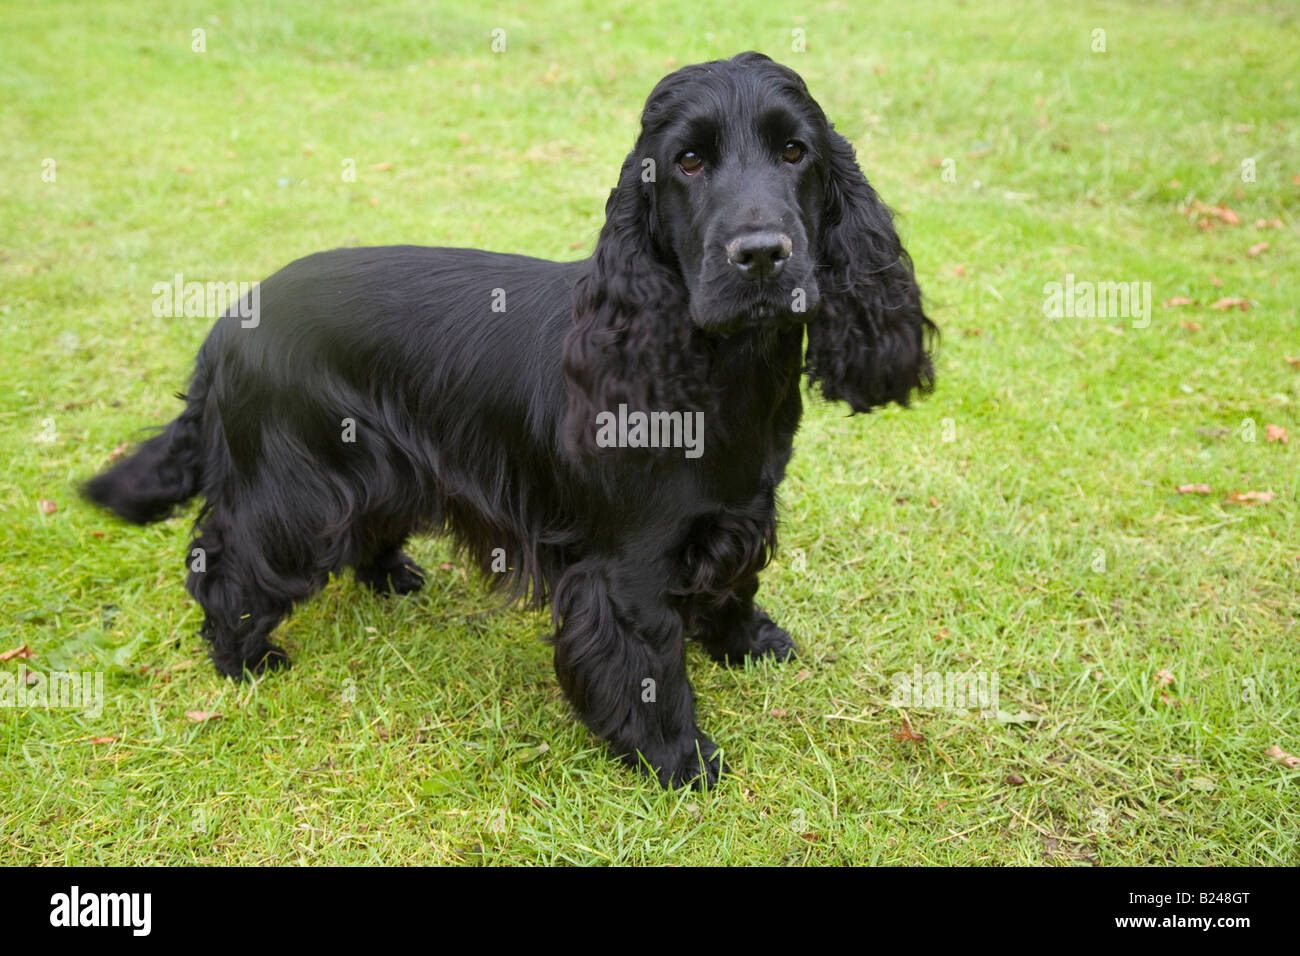 Black English Cocker Spaniel UK; eine Rasse von Waffenhund; bemerkenswert  für die Herstellung einer der vielfältigsten Zahlen von Welpen in einem  Wurf unter Hunderassen Stockfotografie - Alamy